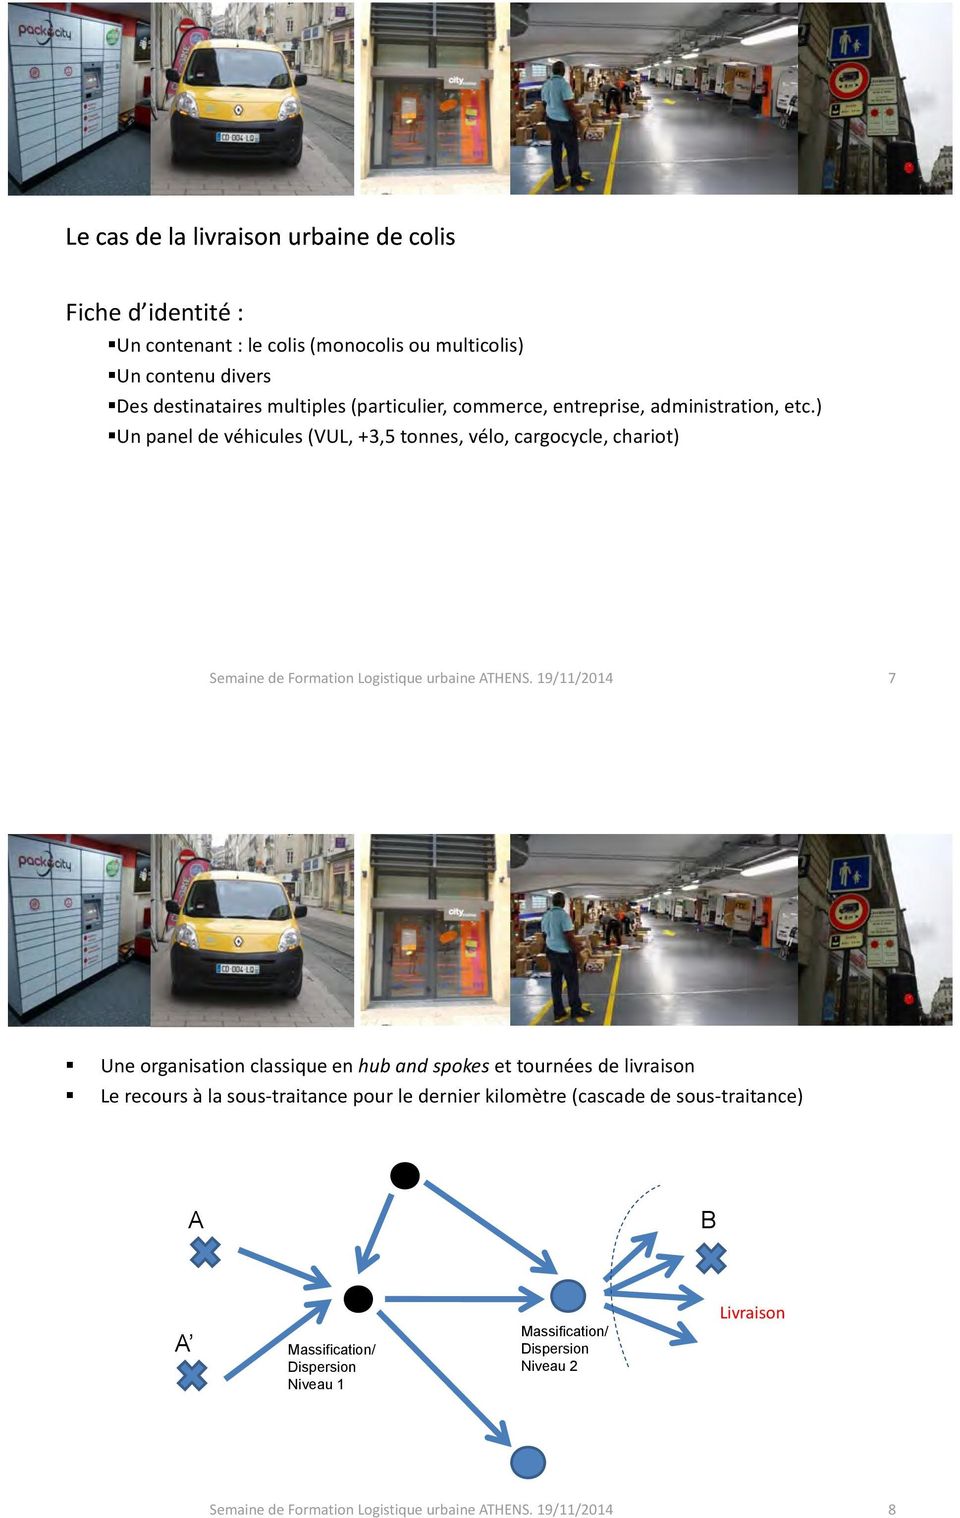 ) Un panel de véhicules p (VUL, +3,5 tonnes, vélo, cargocycle, chariot),,,, Semaine de Formation Logistique urbaine ATHENS.